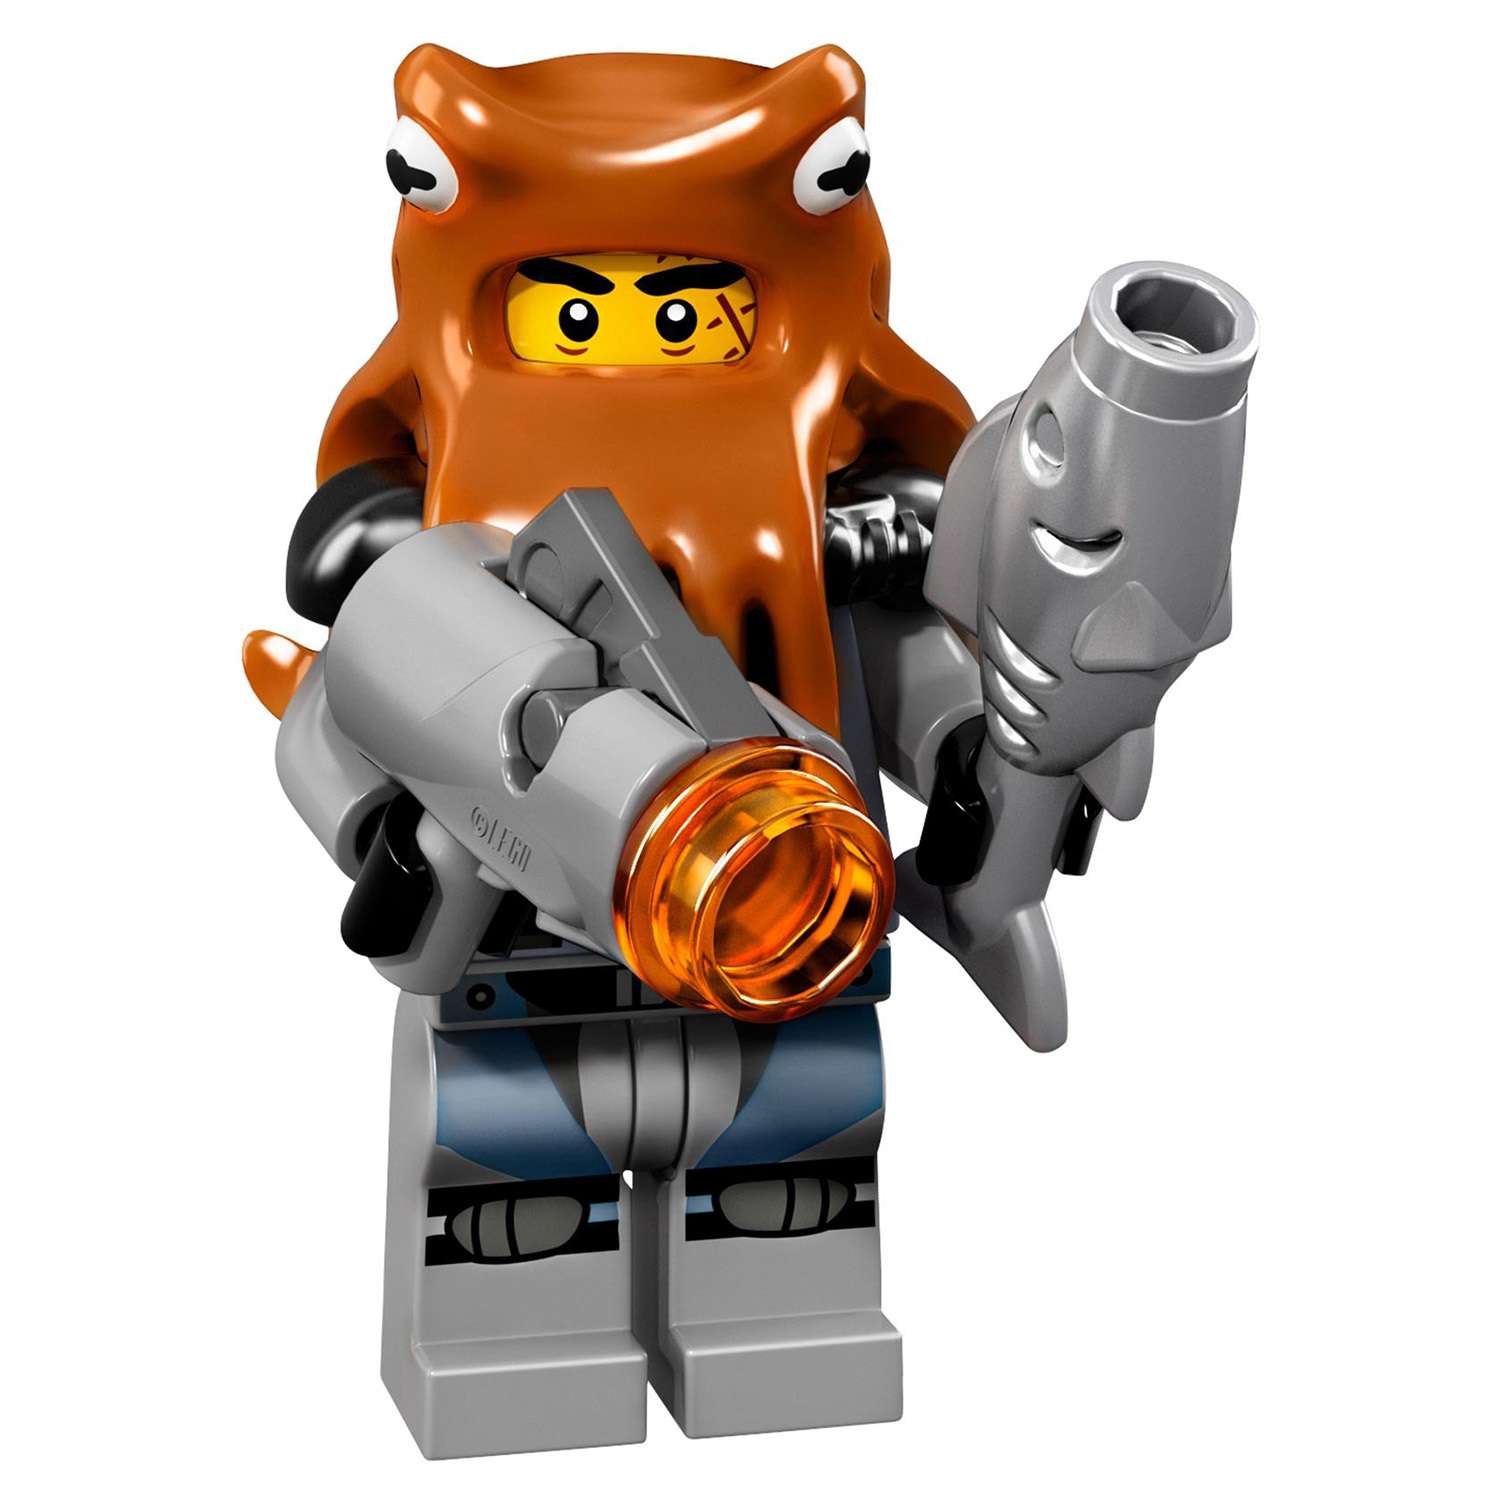 Конструктор LEGO Minifigures Минифигурки ФИЛЬМ: НИНДЗЯГО (71019) в ассортименте - фото 27